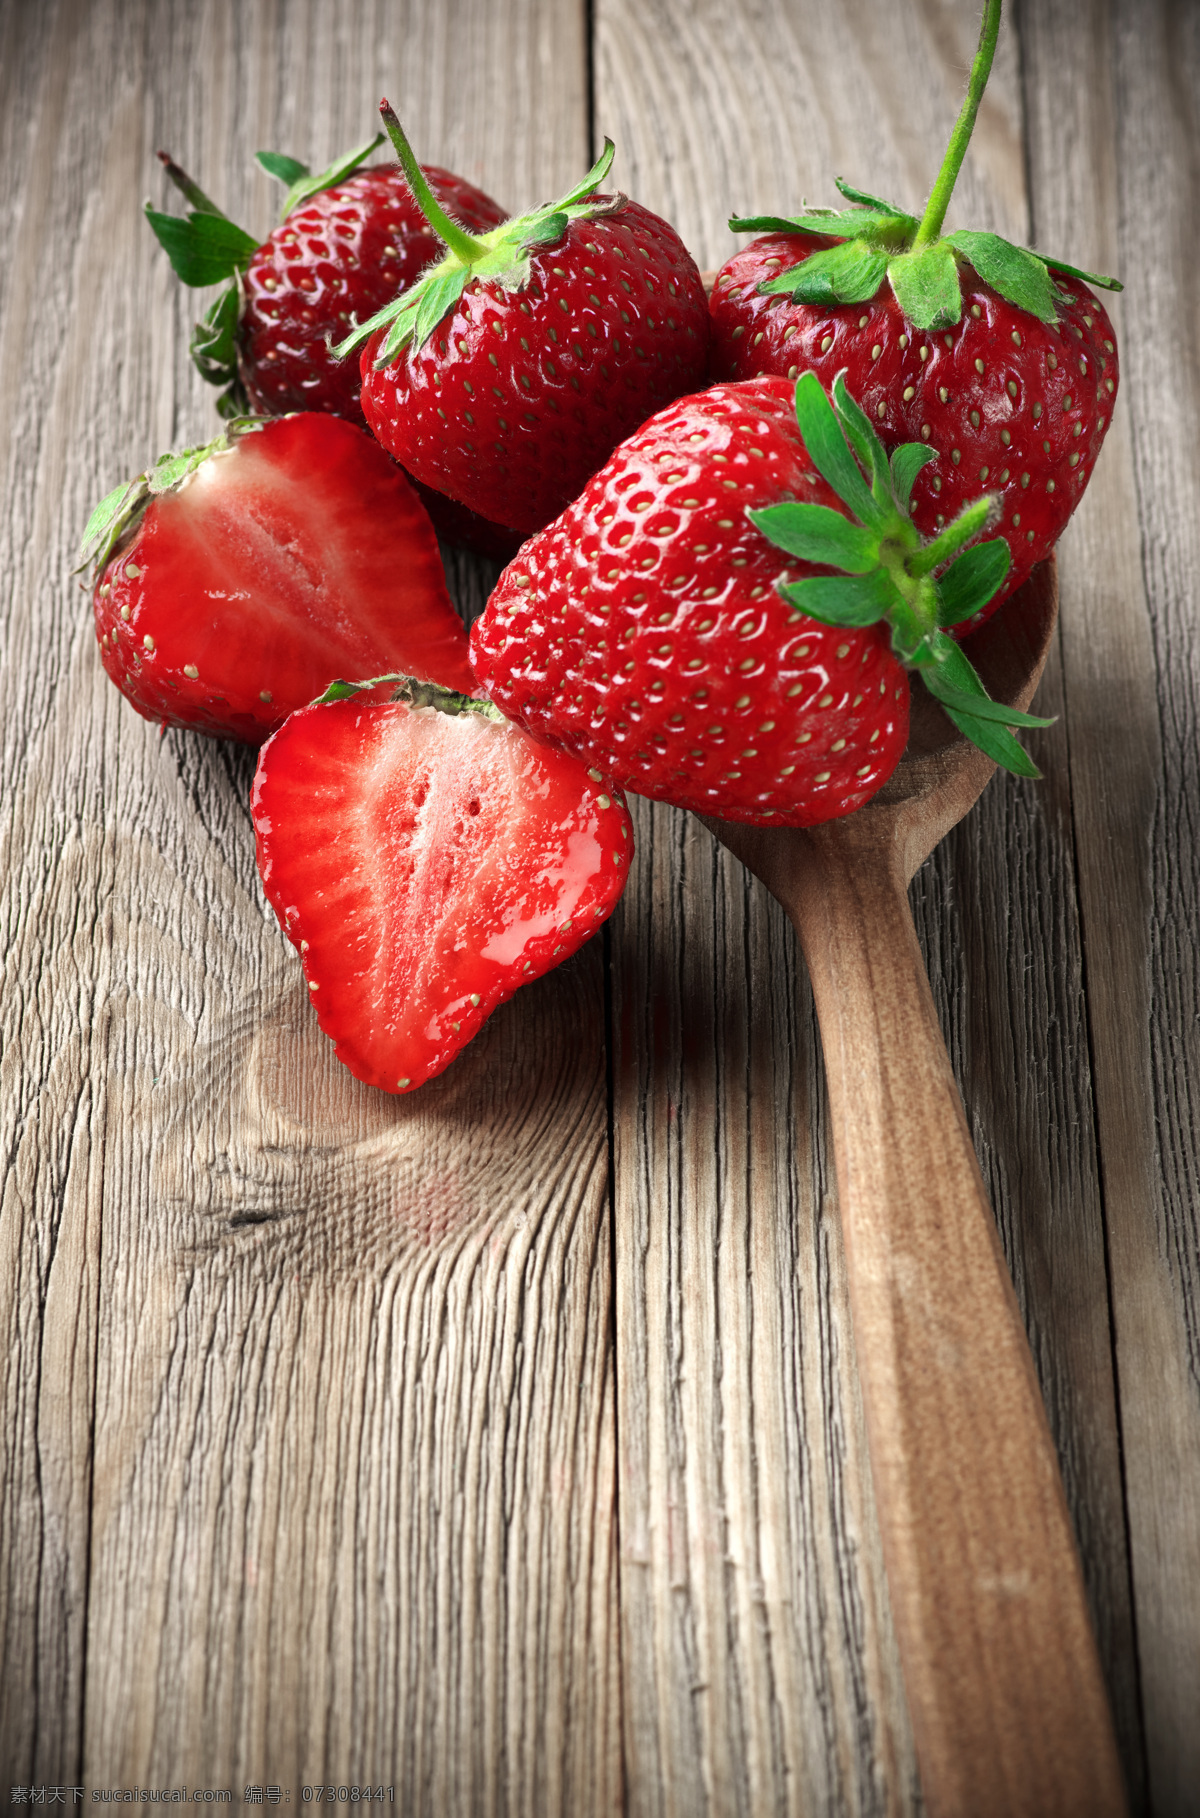 木勺 里 草莓 木板背景 新鲜草莓 新鲜水果 果实 水果摄影 蔬菜图片 餐饮美食